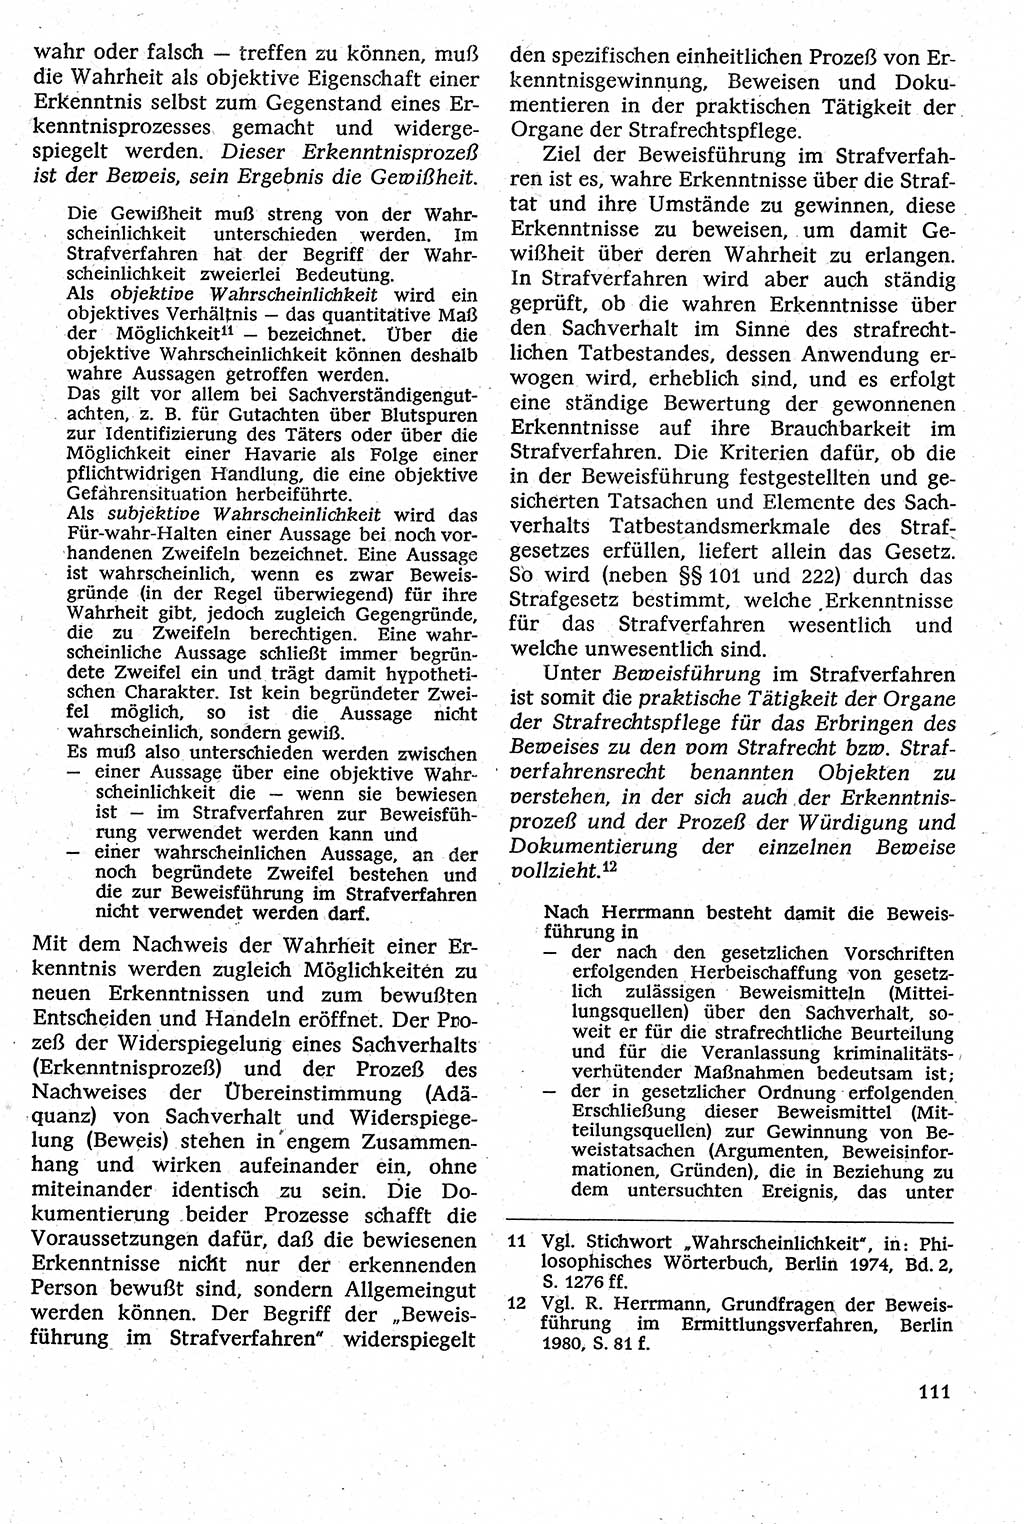 Strafverfahrensrecht [Deutsche Demokratische Republik (DDR)], Lehrbuch 1982, Seite 111 (Strafverf.-R. DDR Lb. 1982, S. 111)